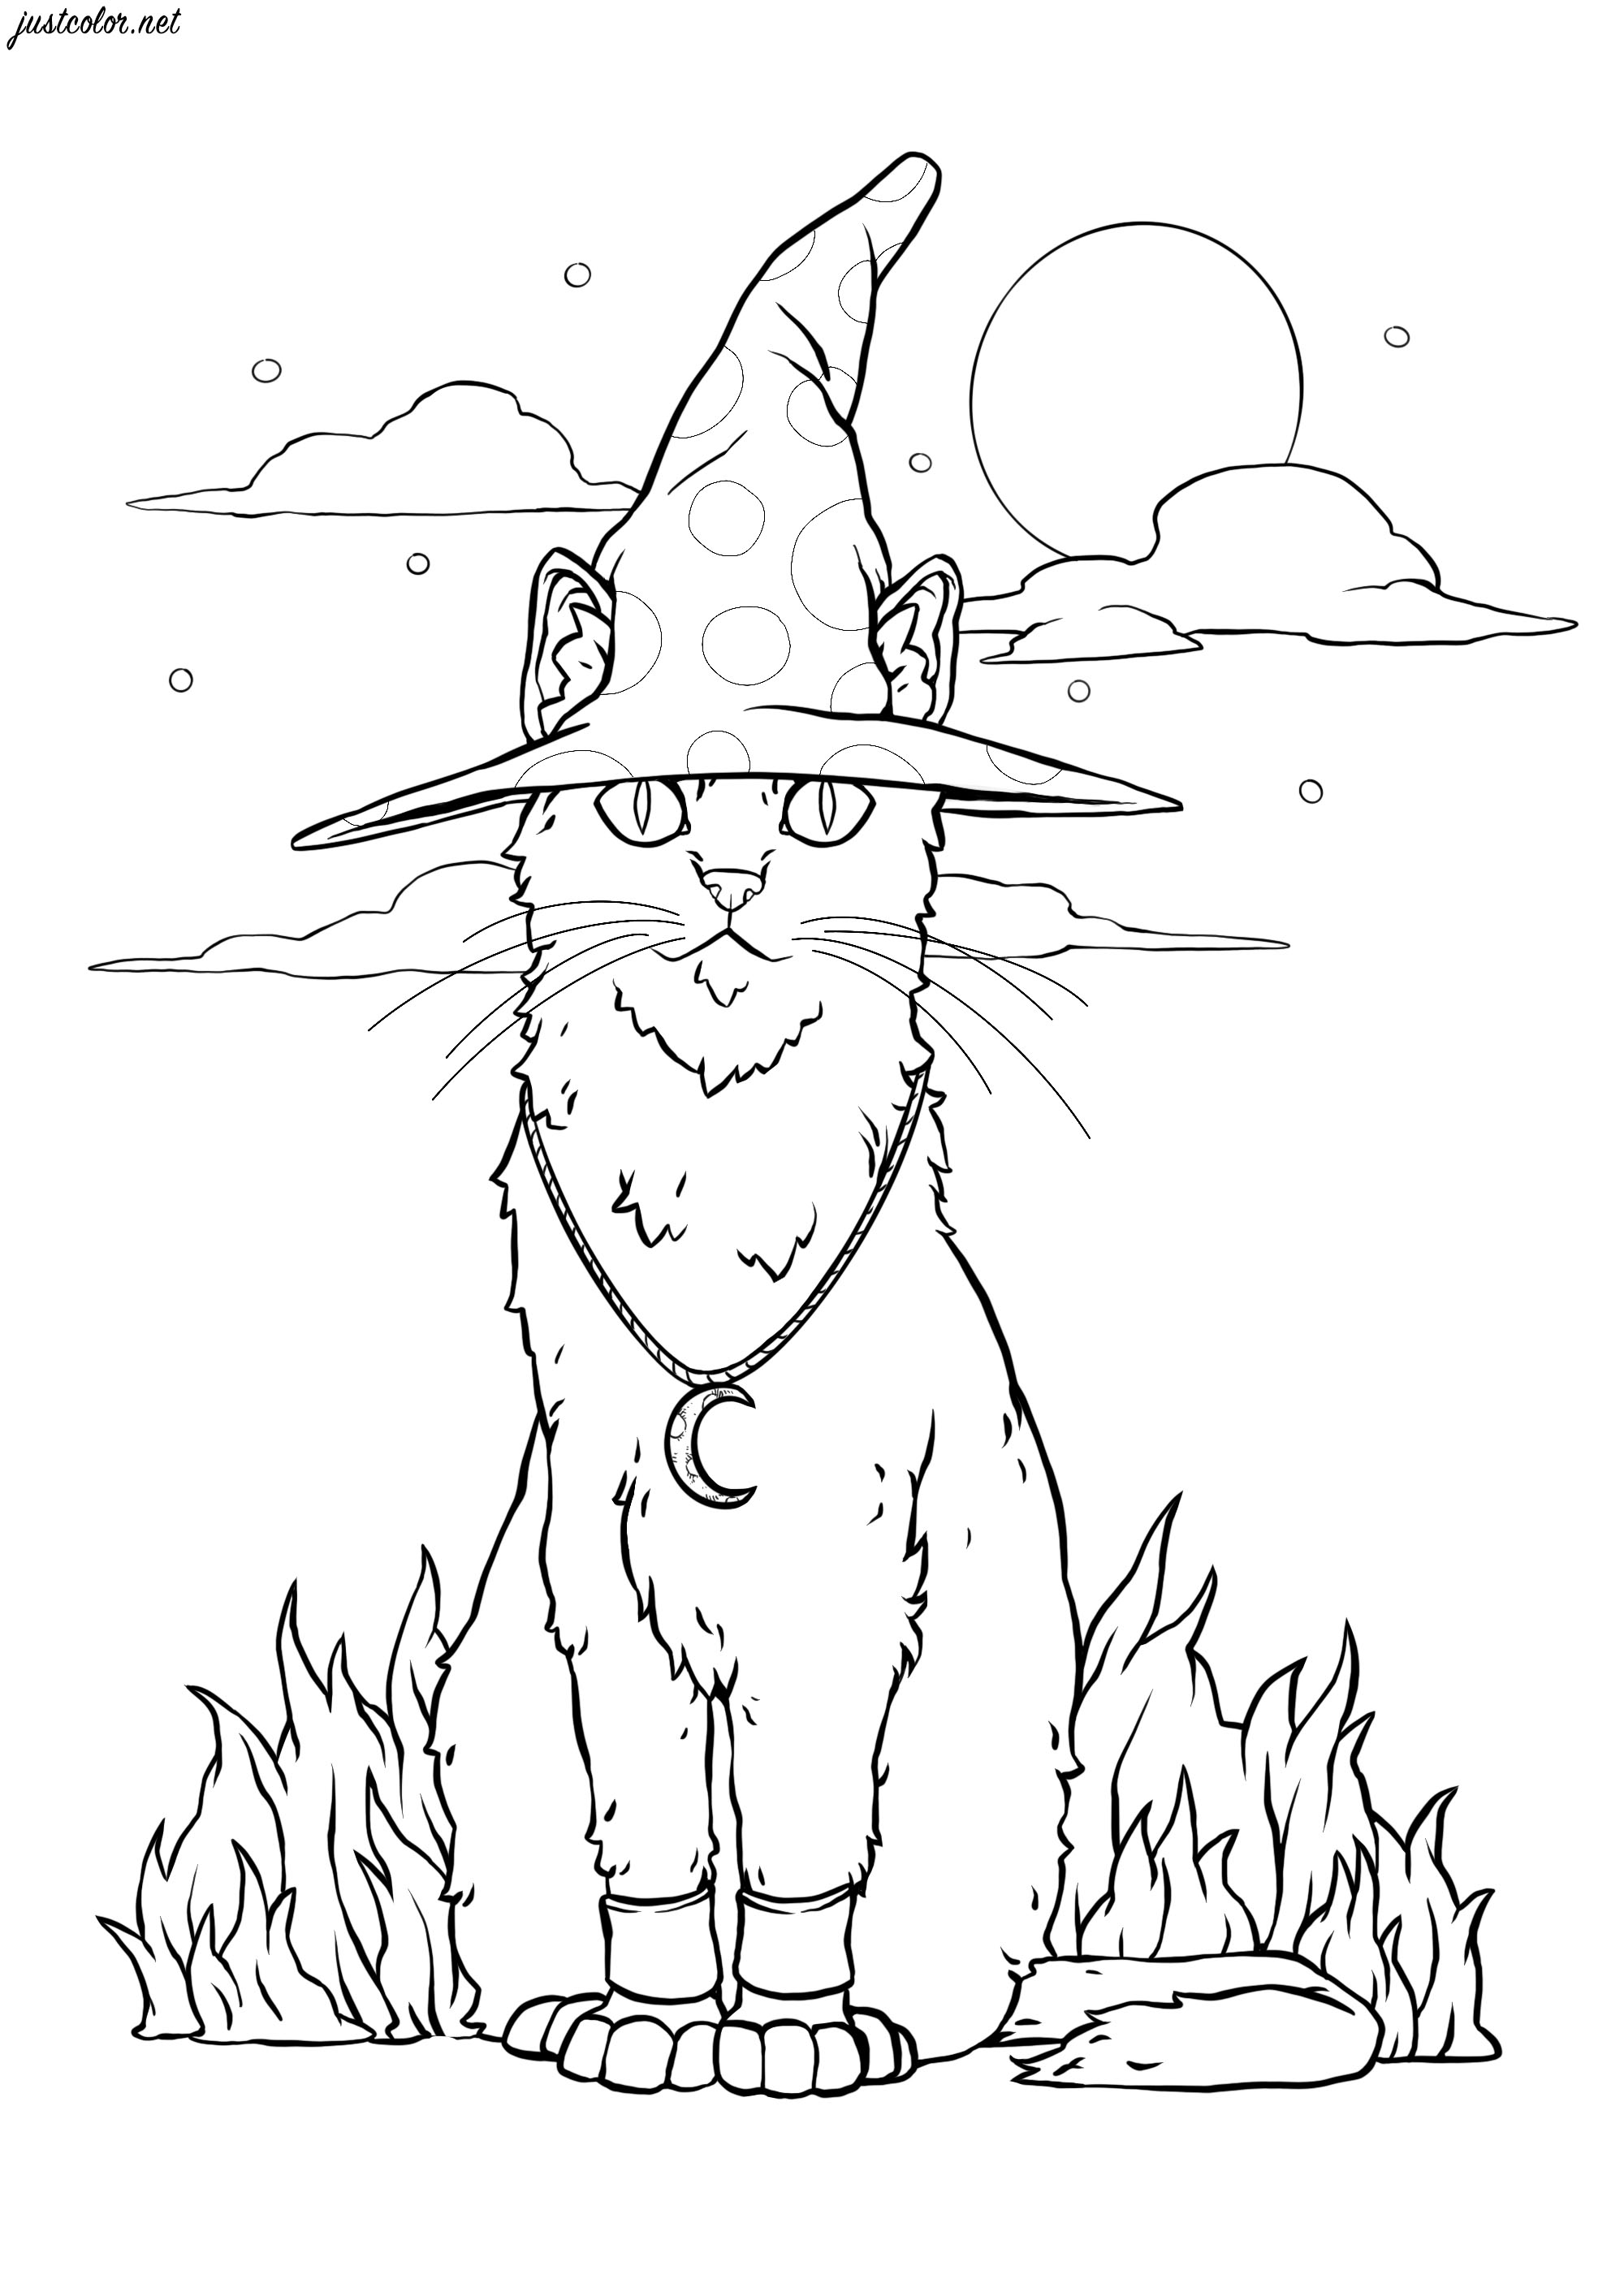 Un sorcier transformé en chat malicieux ... Un sorcier a été transformé en chat ... A vous de le colorier pour lui faire reprendre sa forme initiale !, Artiste : SPZ artworks